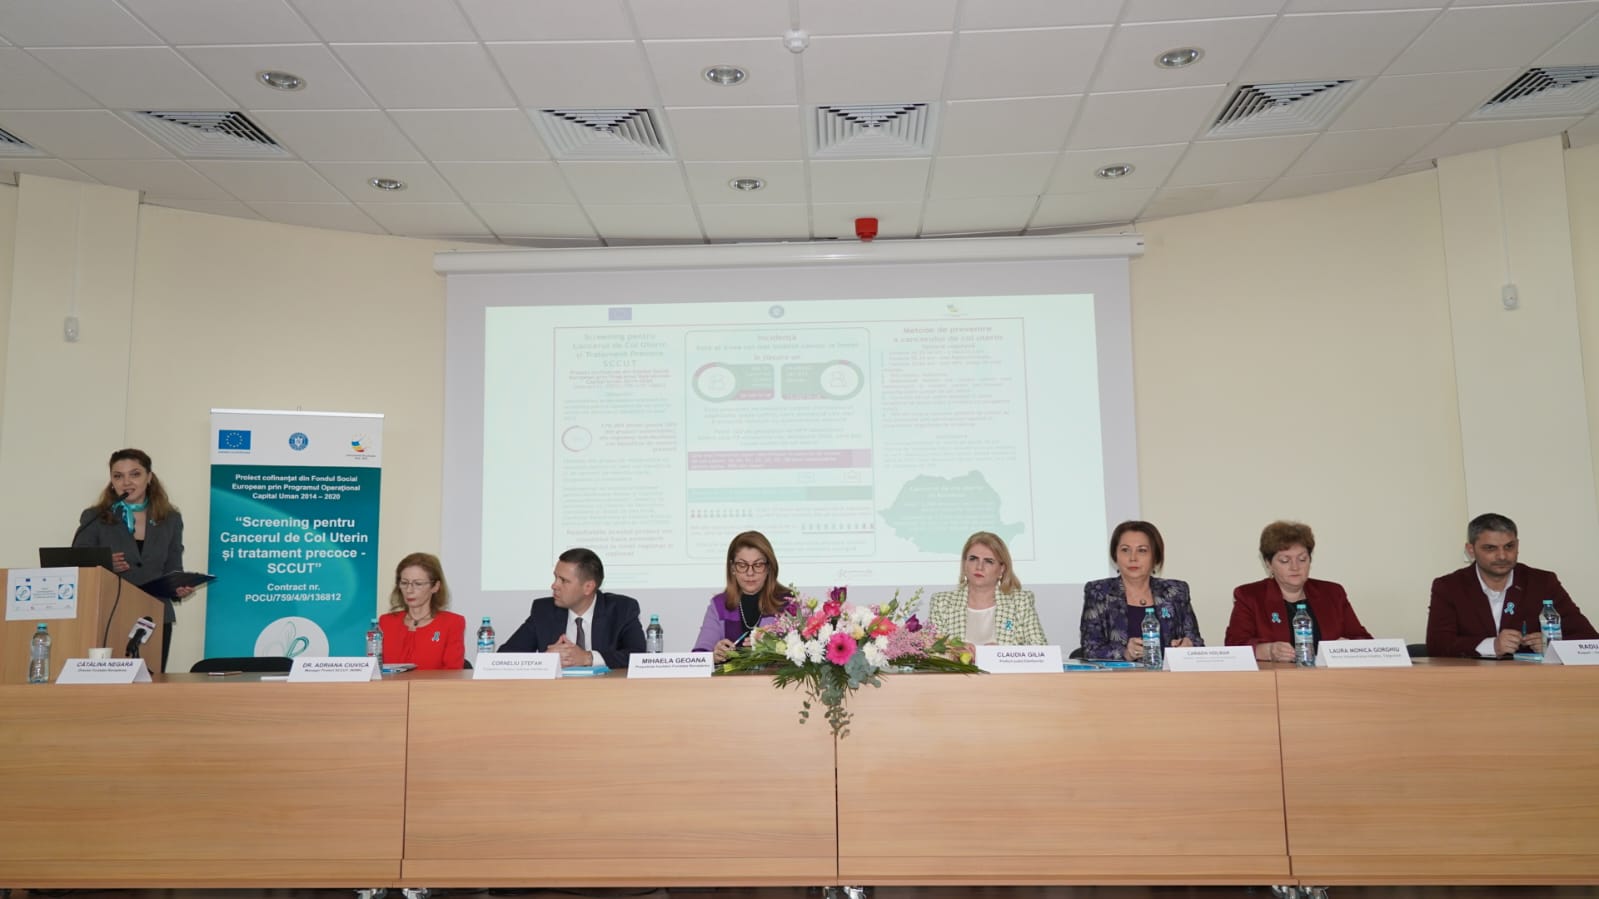 Teste Papanicolau și HPV gratuite în județul Dâmbovița, prin proiectul SCCUT cu finanțare europeană. Spitalul Județean de Urgență Târgoviște, Spitalul Orășenesc Găești și Spitalul Municipal Moreni sunt afiliate în proiect. Unitatea Mobila a INSMC va ajunge pe  3 și 11 februarie în localitățile Vlădeni și I.L. Caragiale